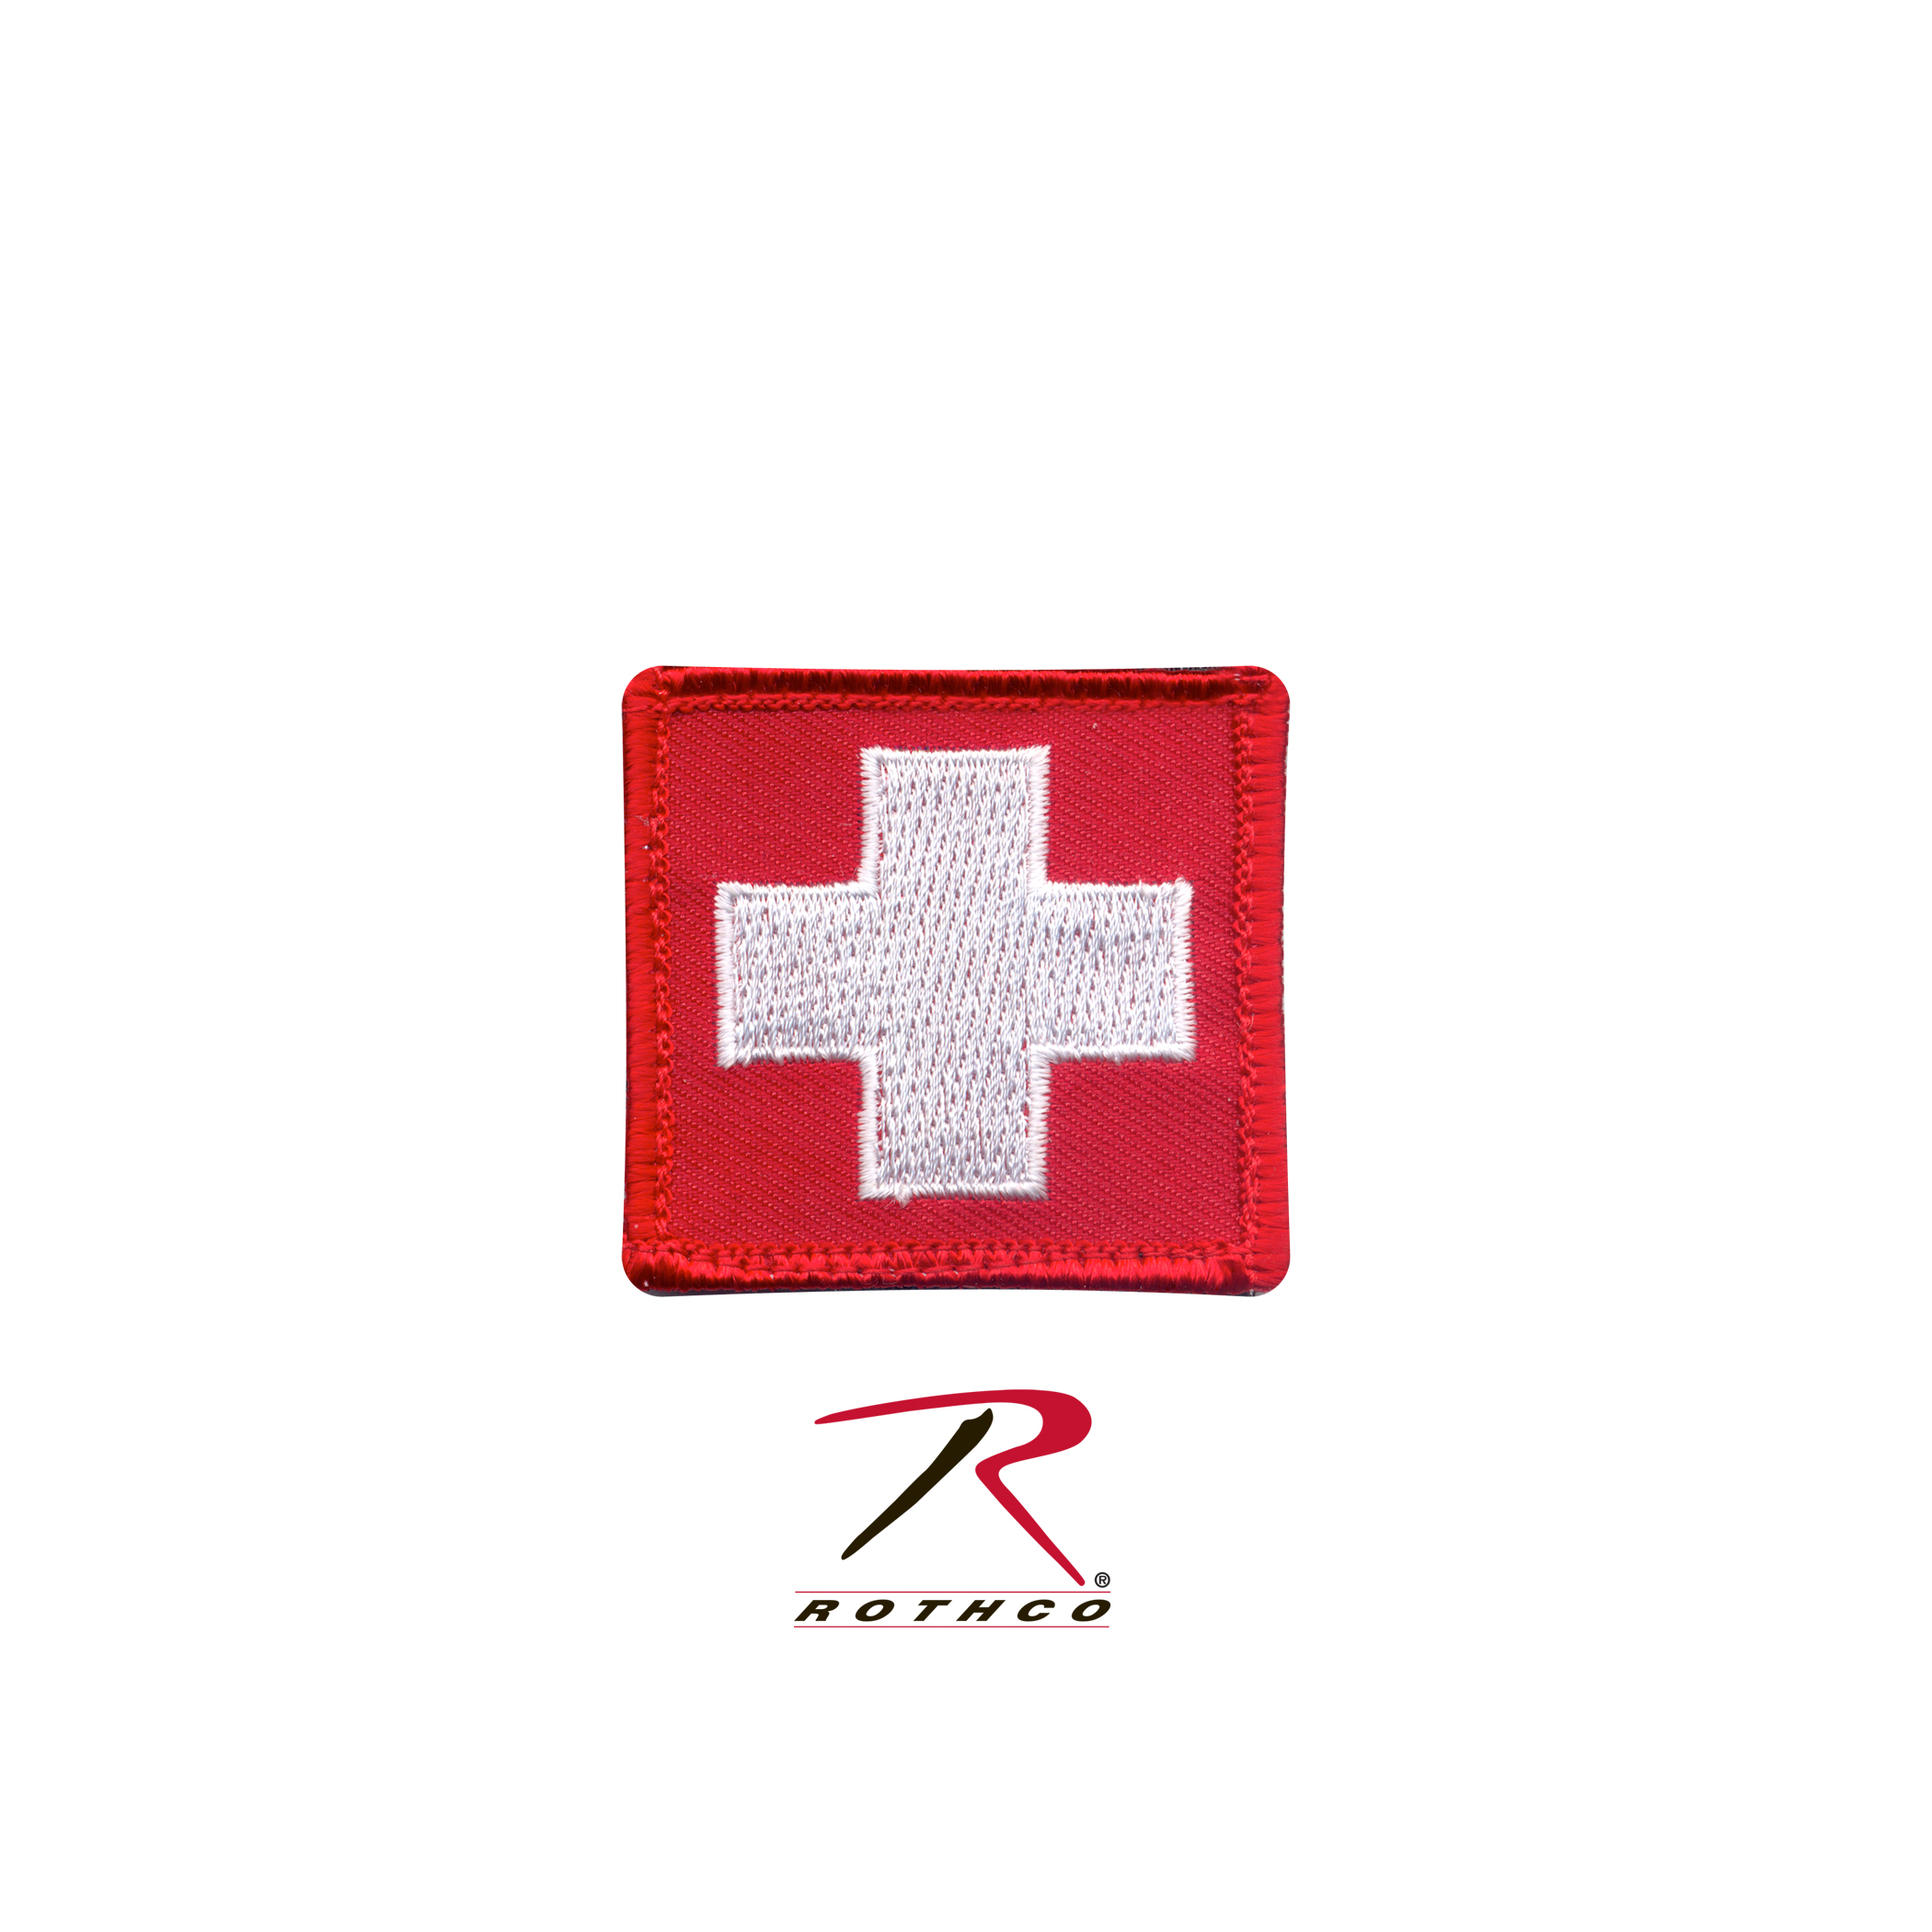 Logo dấu chéo trắng đã trở thành một biểu tượng đại diện cho sự liên kết giữa các bệnh viện, trung tâm y tế và các cơ quan chức năng trong lĩnh vực y tế. Xem ảnh để tìm hiểu những đóng góp và tầm quan trọng của logo dấu chéo trắng.